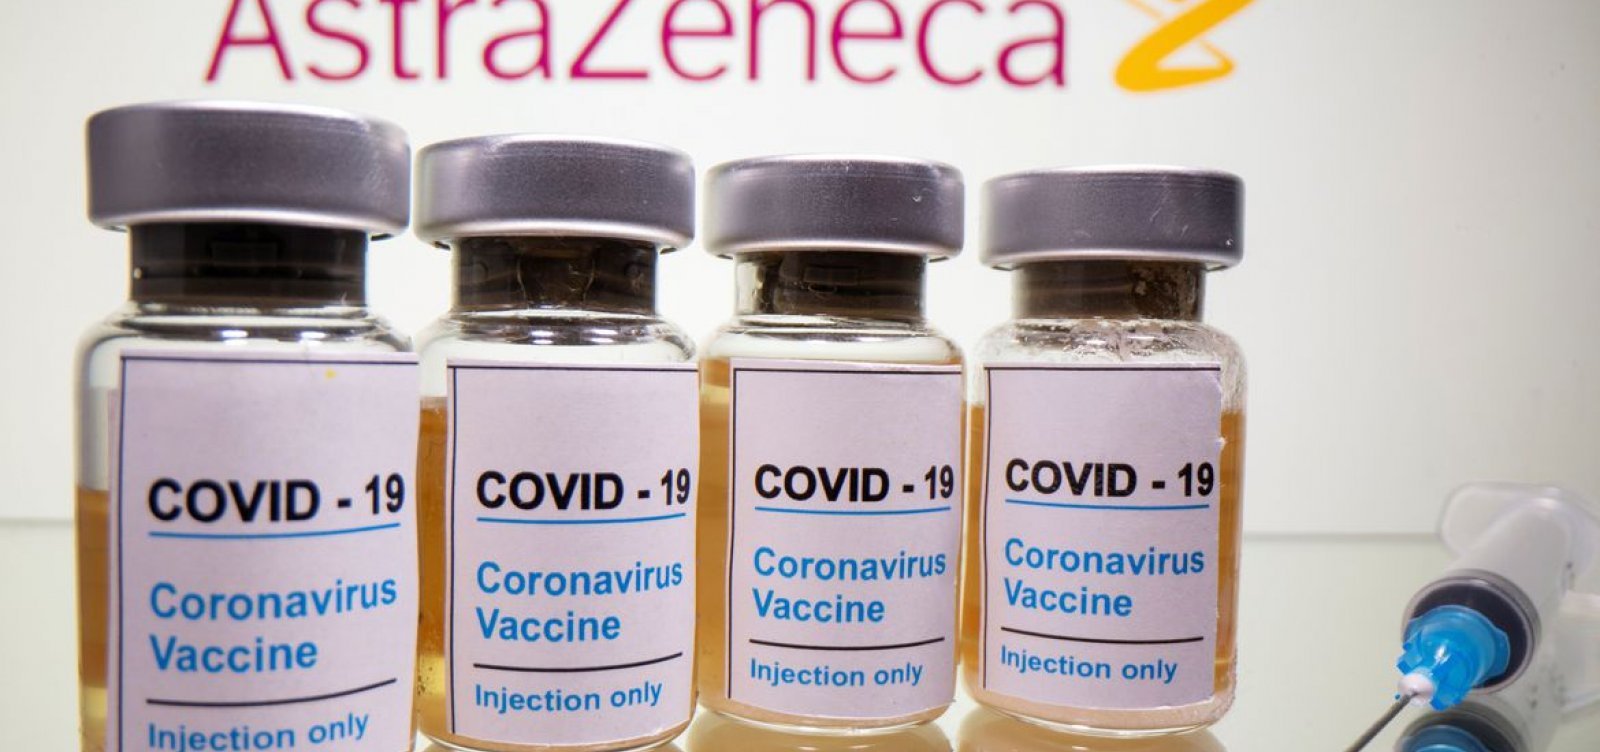 Após pausa na distribuição, Fiocruz libera 1,7 milhão de doses de AstraZeneca 